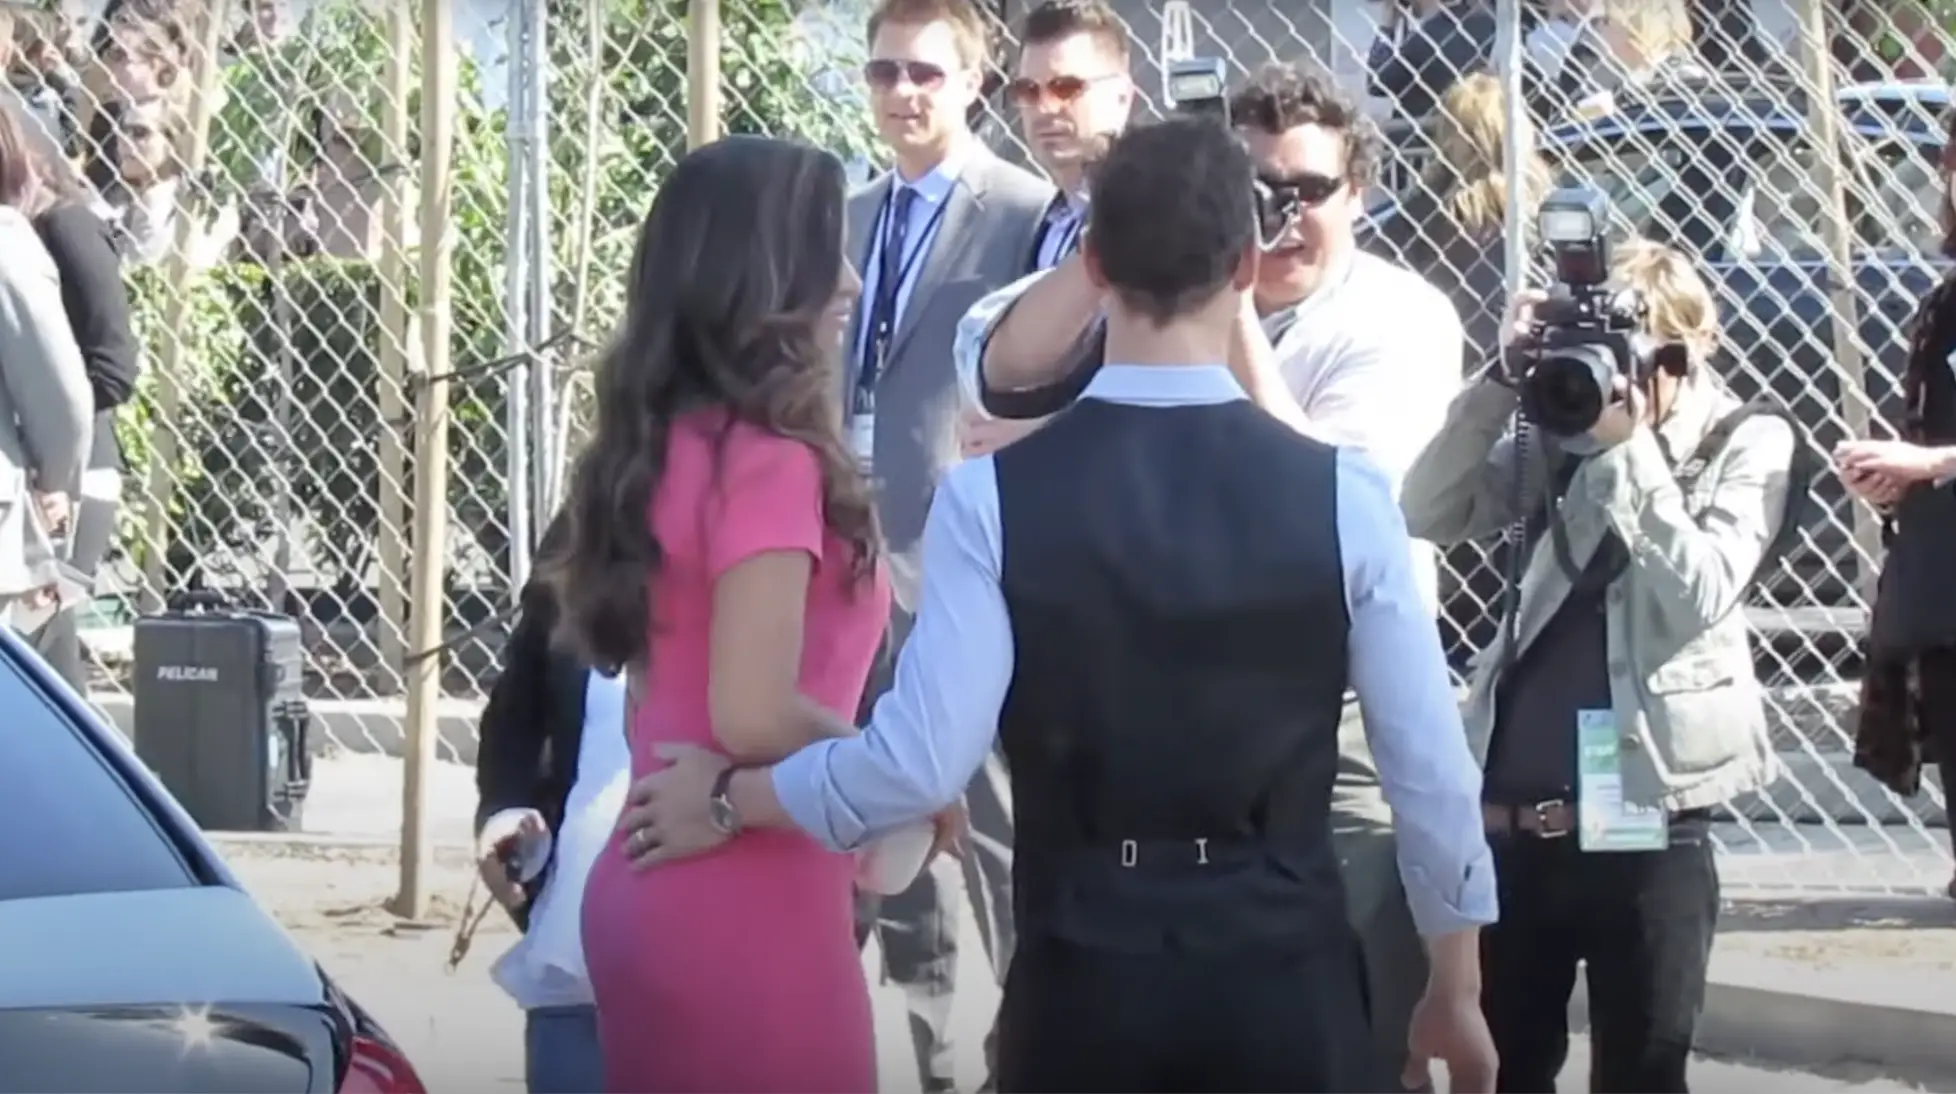 Camila Alves McConaughey et son mari Matthew McConaughey arrivant à un événement à Los Angeles le 7 juillet 2023 | Source : YouTube/Celebrity WotNot